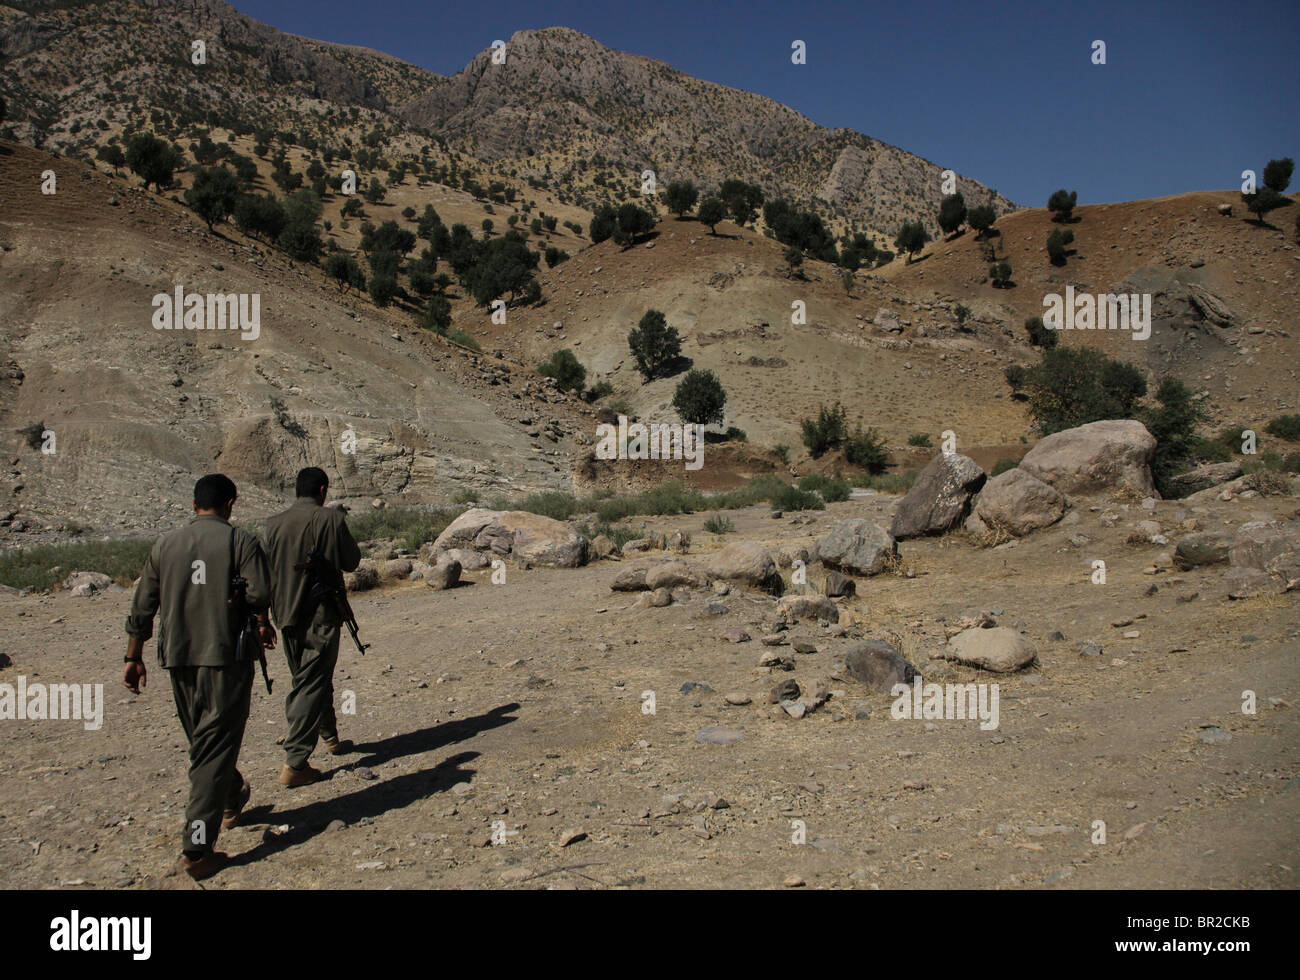 Les combattants kurdes des forces de défense populaires HPG l'aile militaire du Parti des travailleurs du Kurdistan PKK marchent dans les montagnes de Quandil, près de la frontière iranienne au nord de l'Irak Banque D'Images